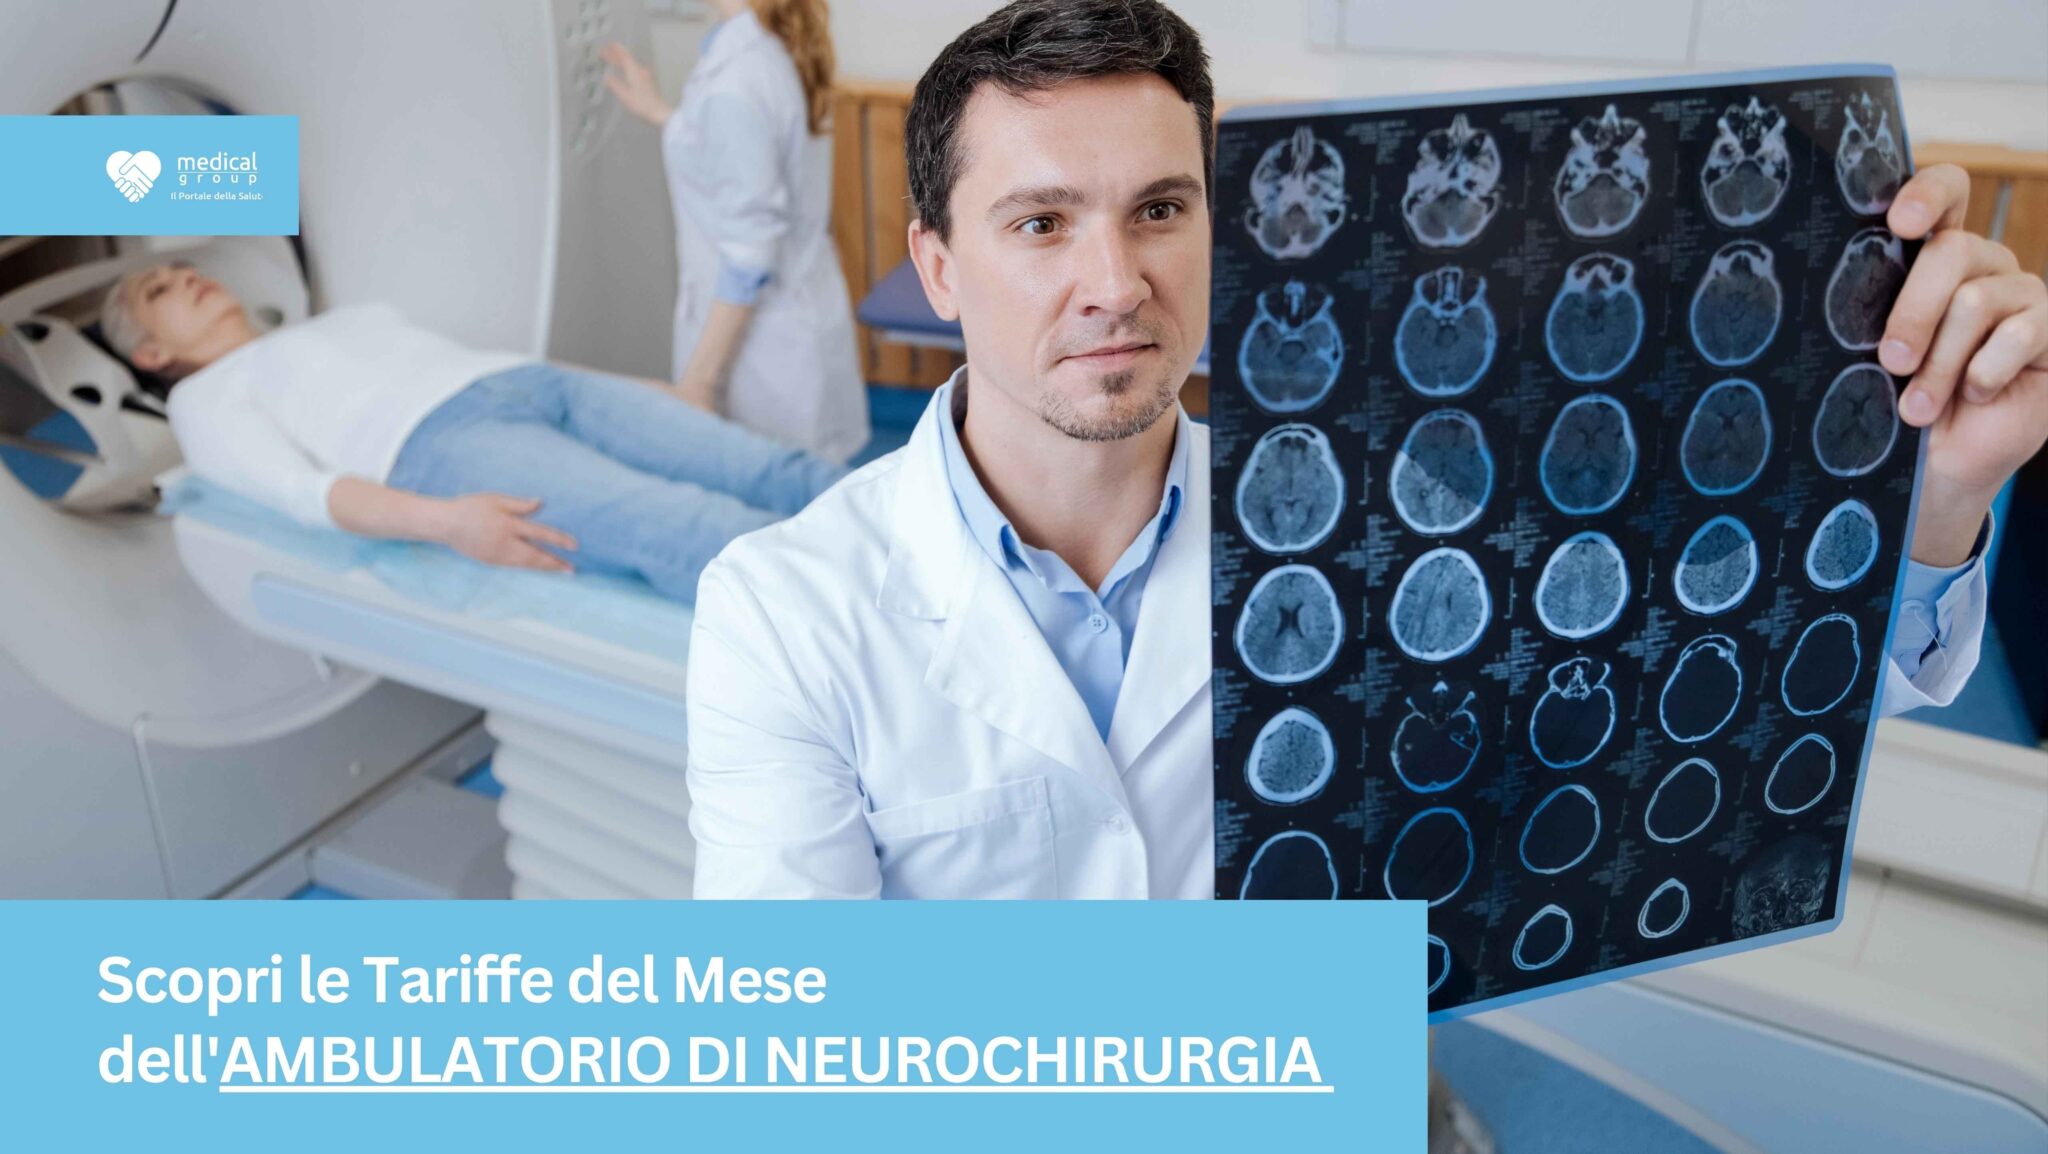 Tariffe del Mese Poliambulatorio Neurochirurgia F-Medical Frosinone